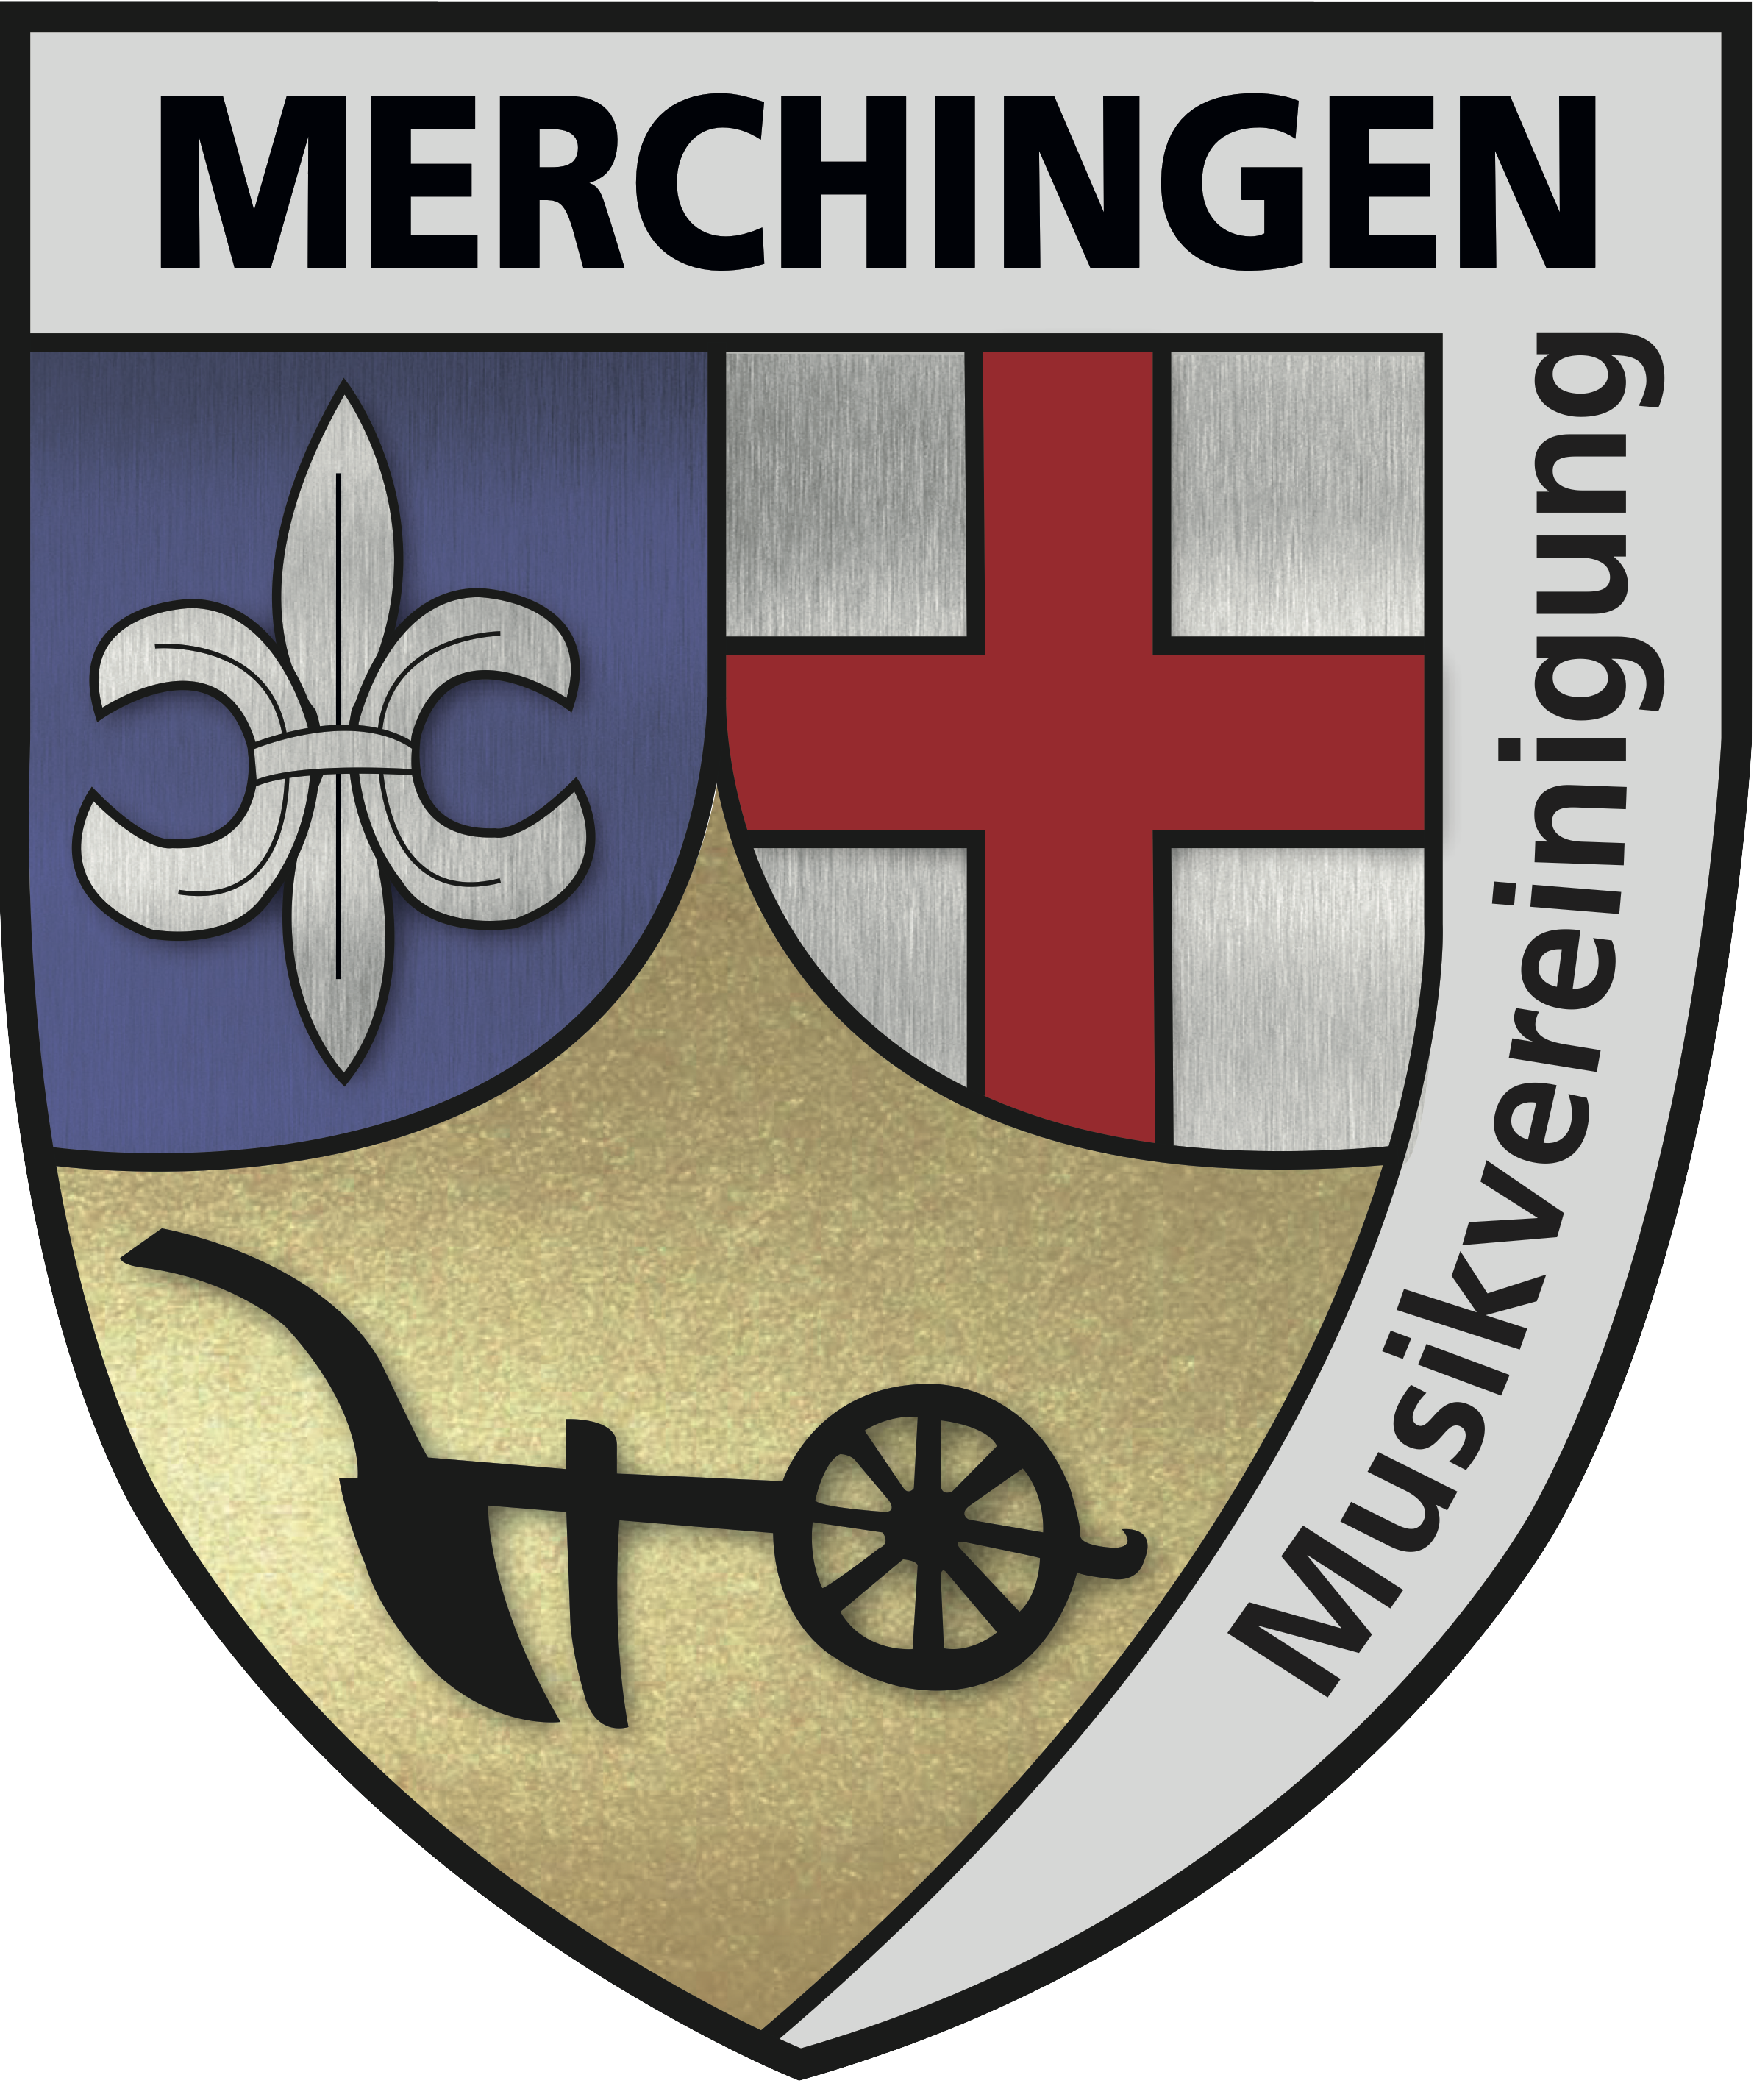 Musikvereinigung Merchingen e.v.